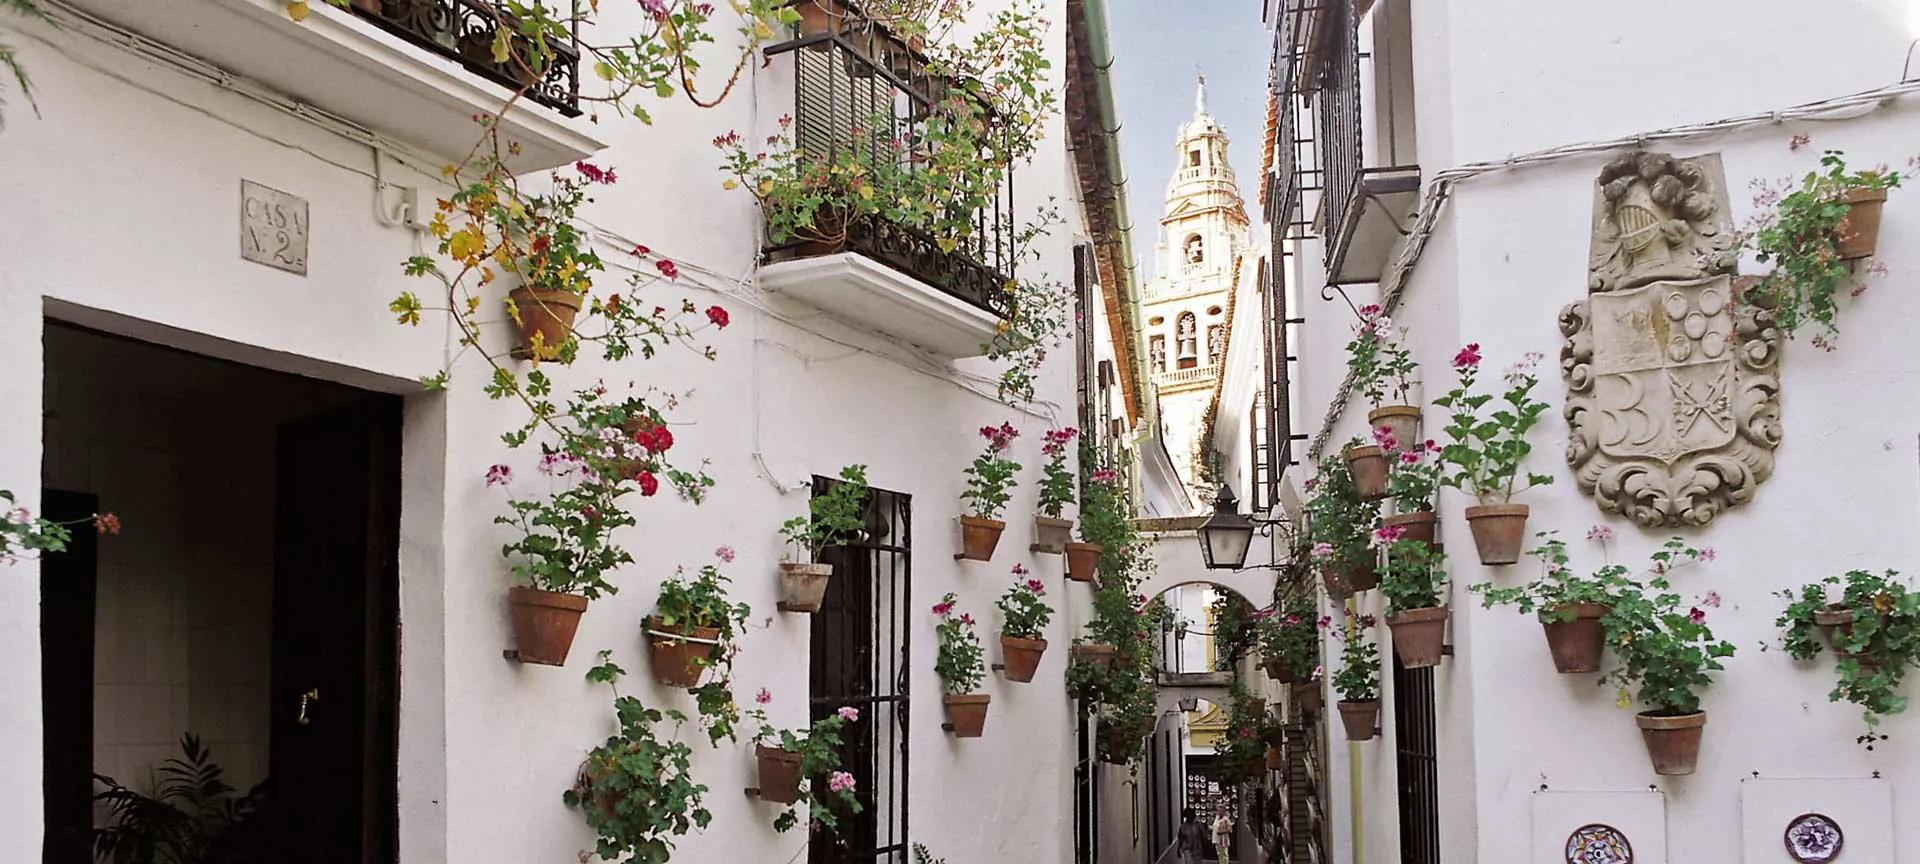 calleja de las flores cordoba - Cuál es la flor tipica de Córdoba